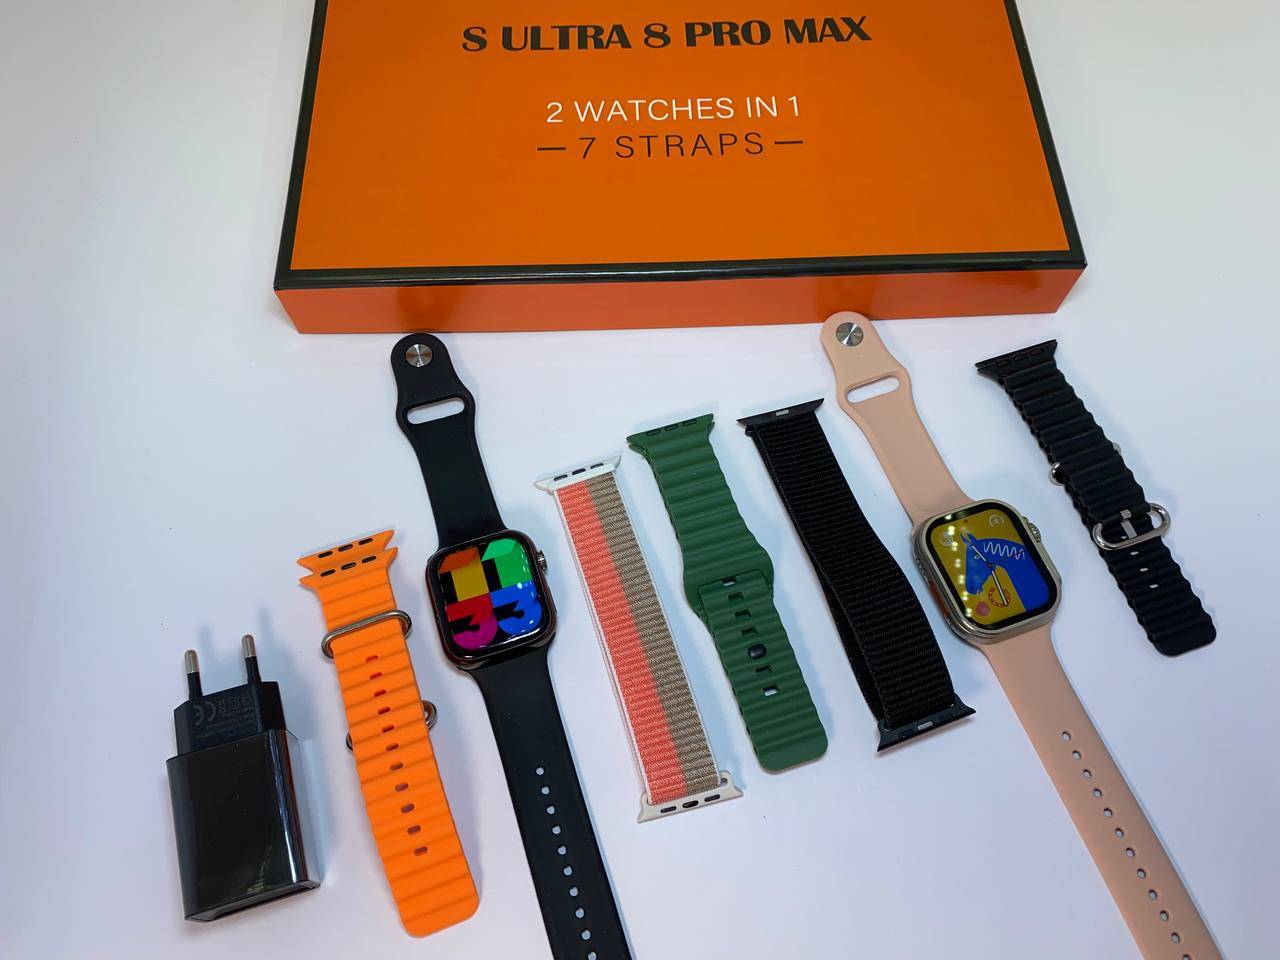 پک هدیه دو عدد ساعت هوشمند طرح اپل واچ مدل S ULTRA 8 PRO MAX همراه 7 بند باگارانتی | فروشگاه اینترنتی موبایل جدید